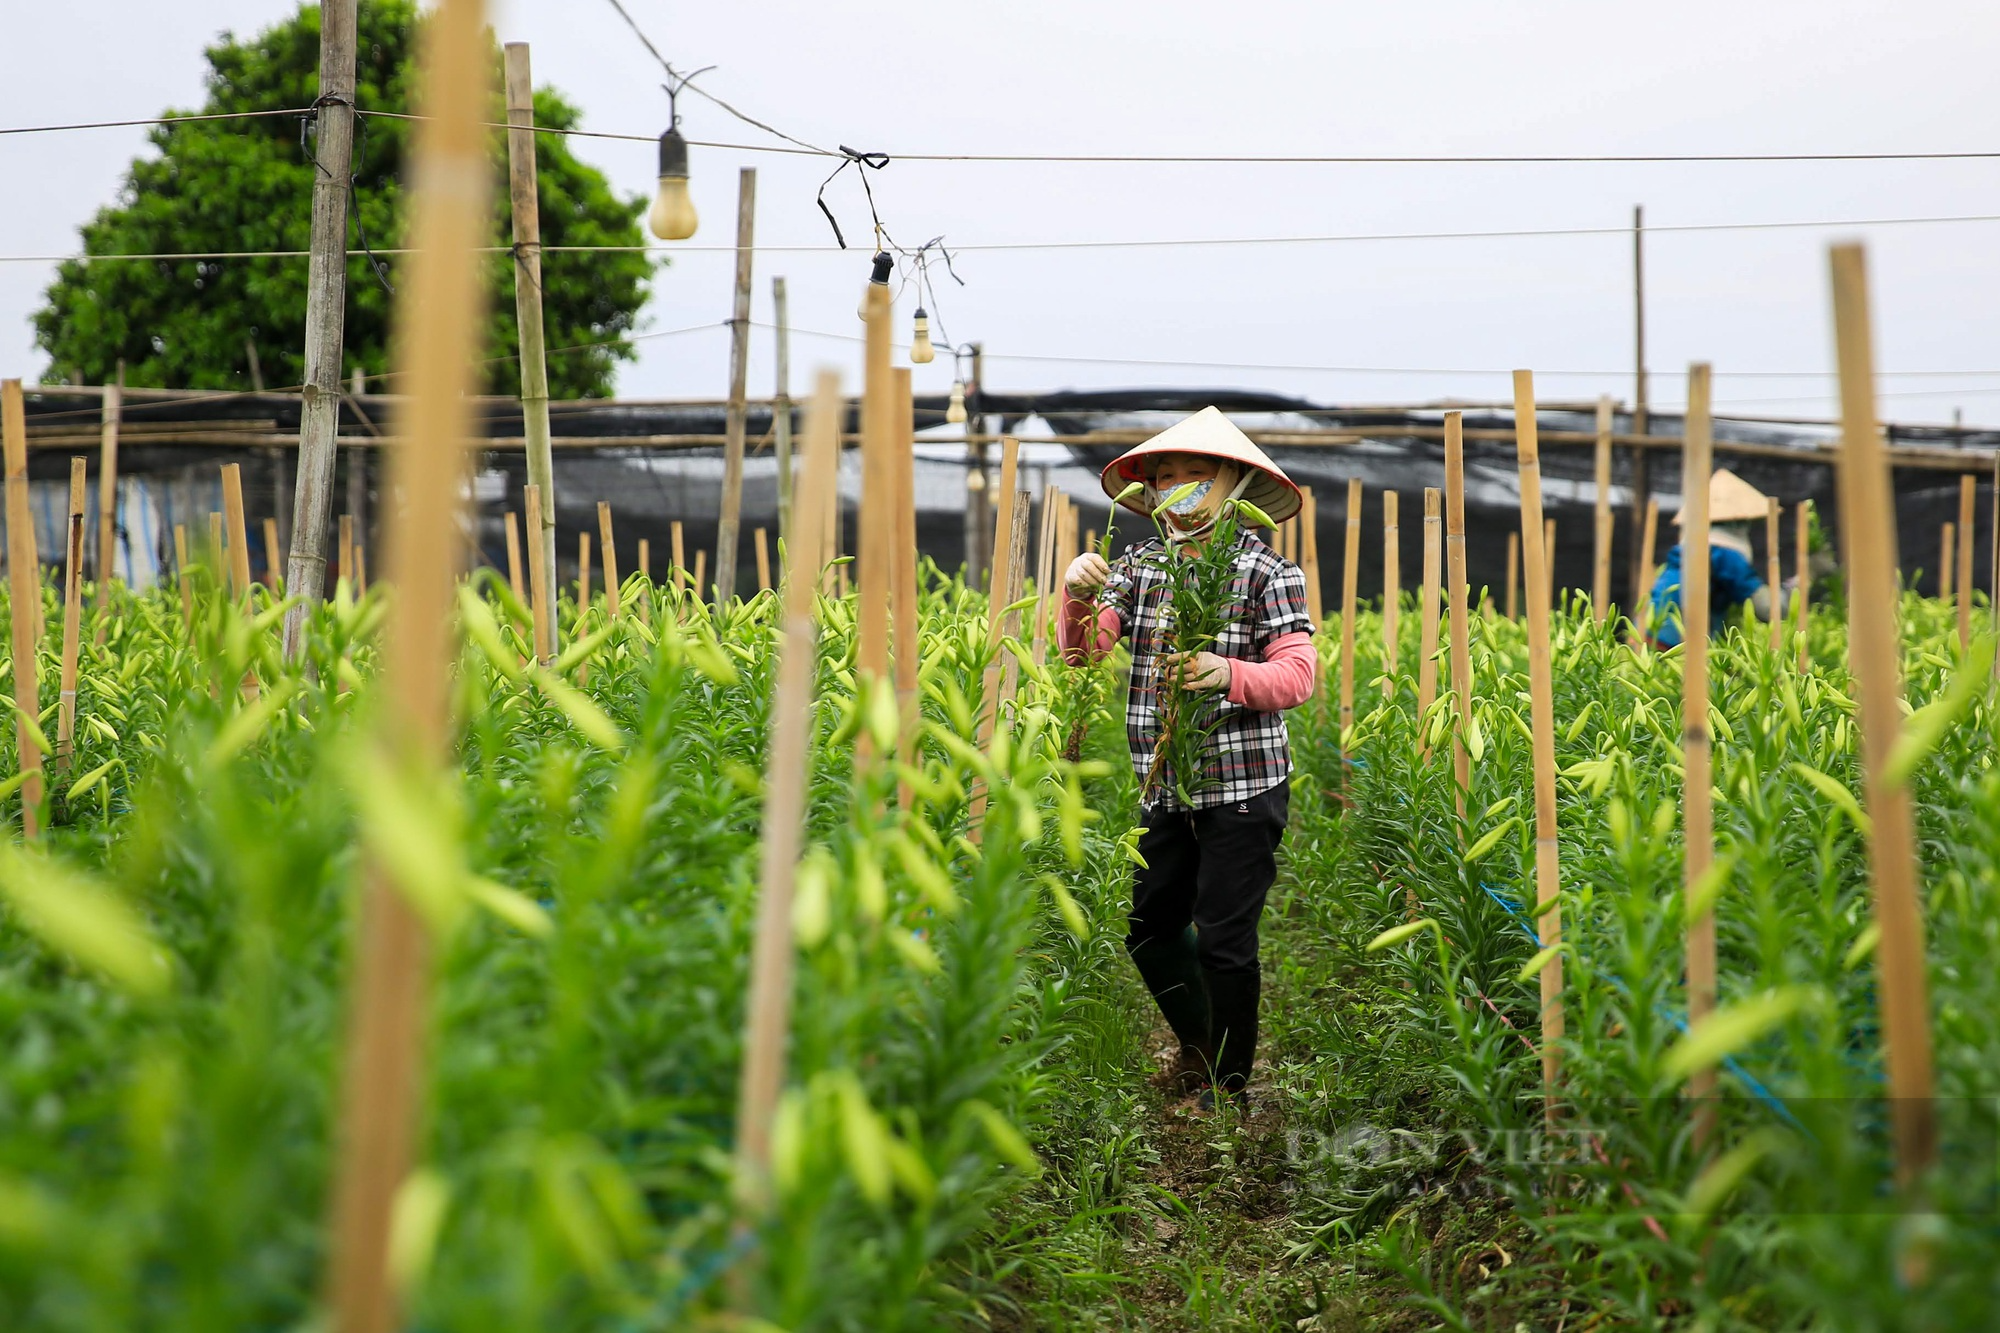 Hoa loa kèn bung nở, nông dân Hà Nội thu hàng chục triệu mỗi ngày - Ảnh 3.